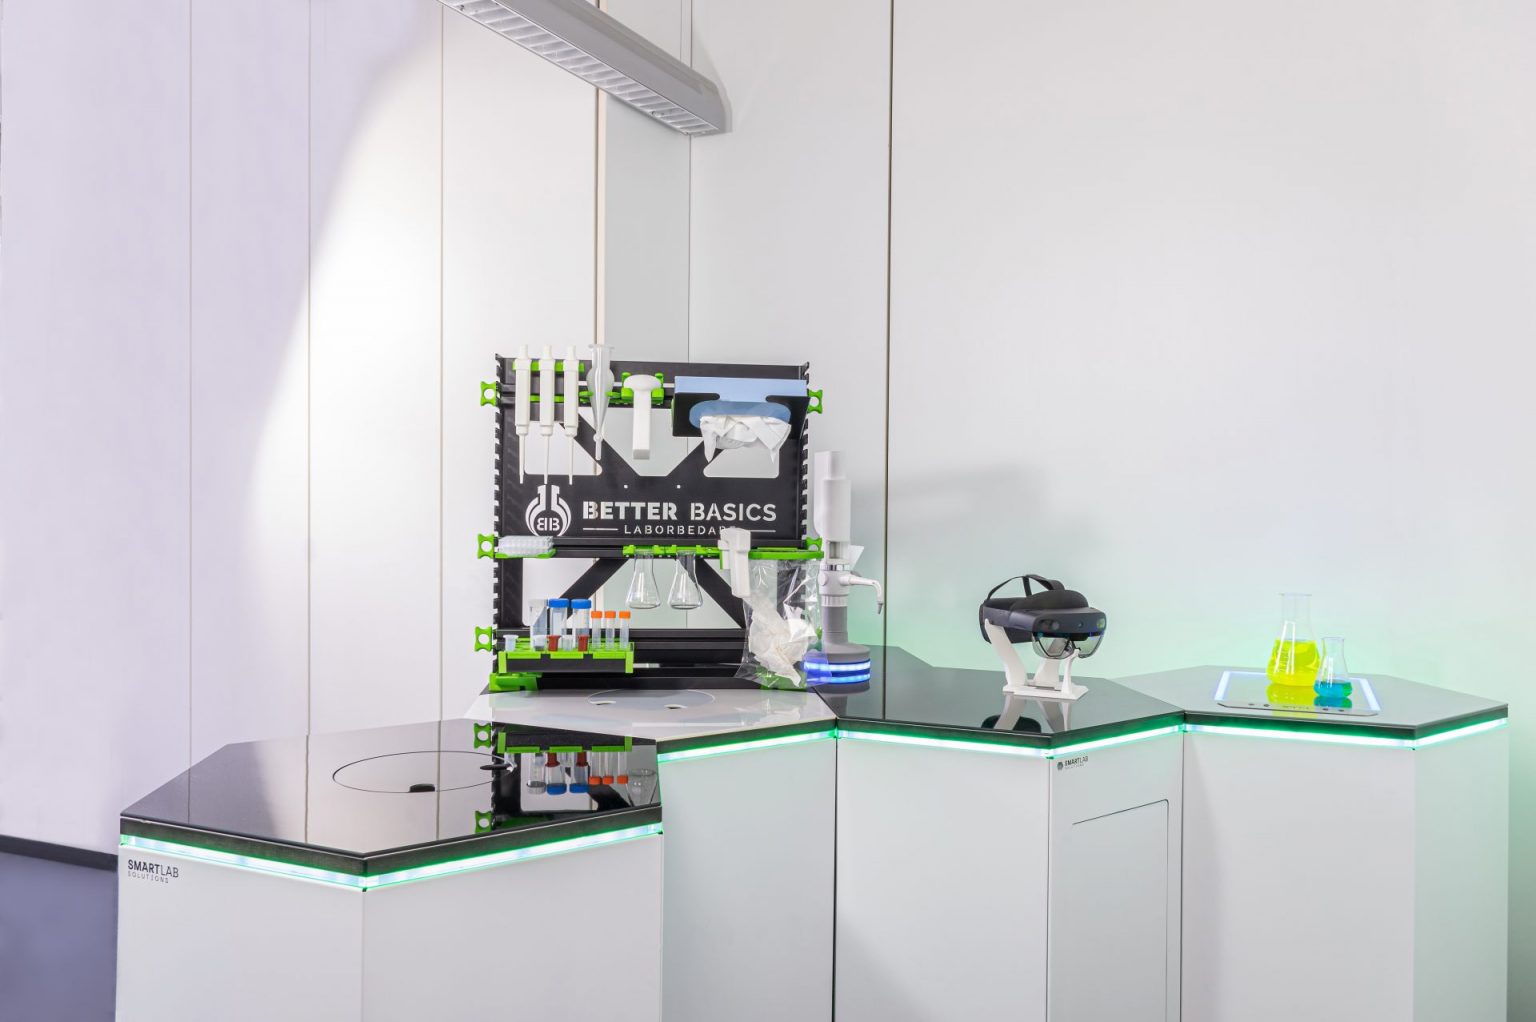 Detailaufnahme eines SmartRack neben einer augmented reality brille einem dispenser sowie einem Magnetrührer in einem digitalen Labor weitwinkelaufnahme